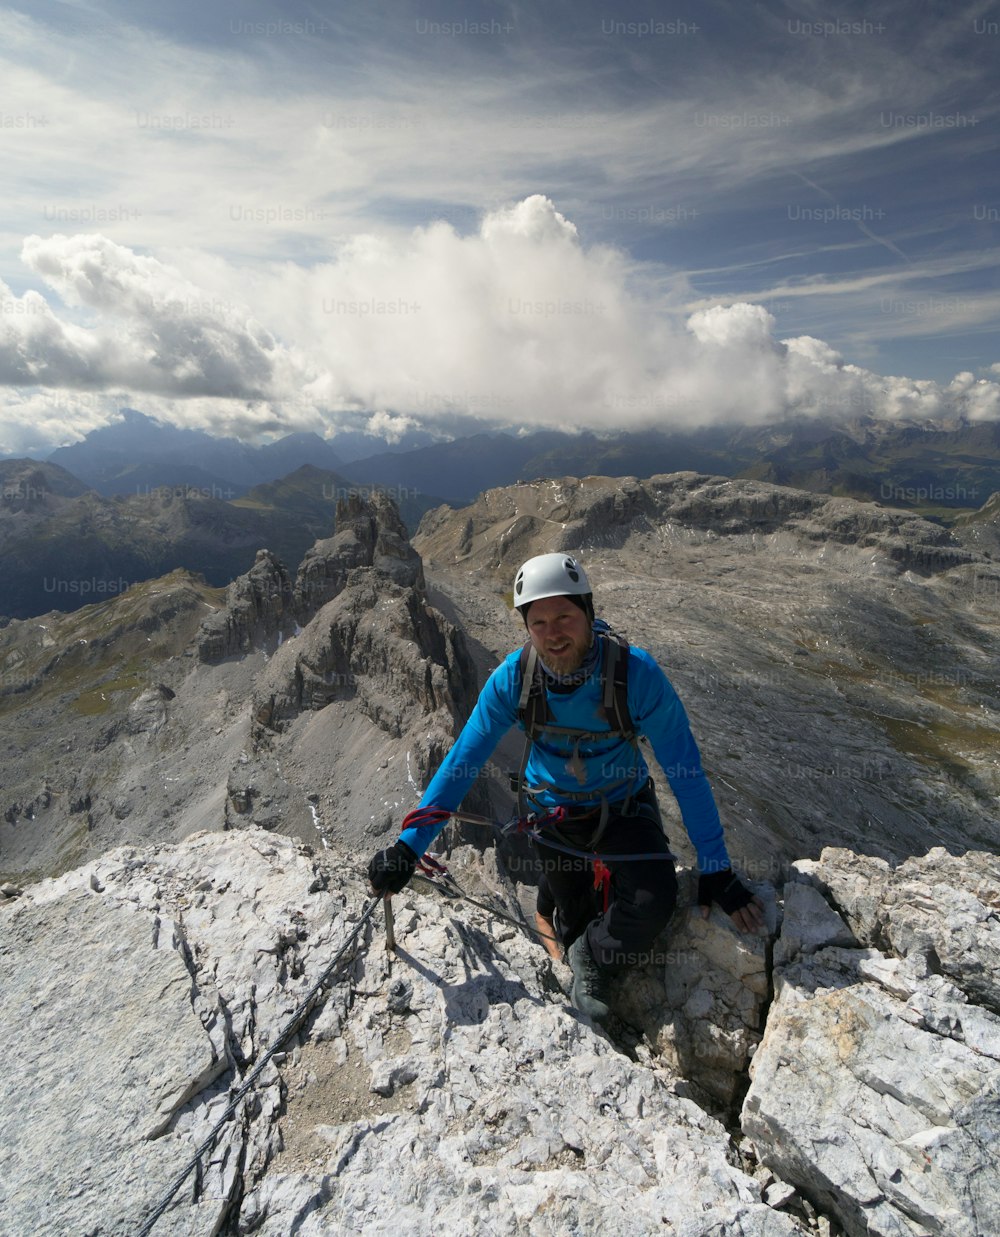 Un jeune grimpeur vêtu d’une veste bleue et d’un casque blanc atteint le sommet et la fin d’une Via Ferrata dans le Tyrol du Sud dans les Dolomites italiennes